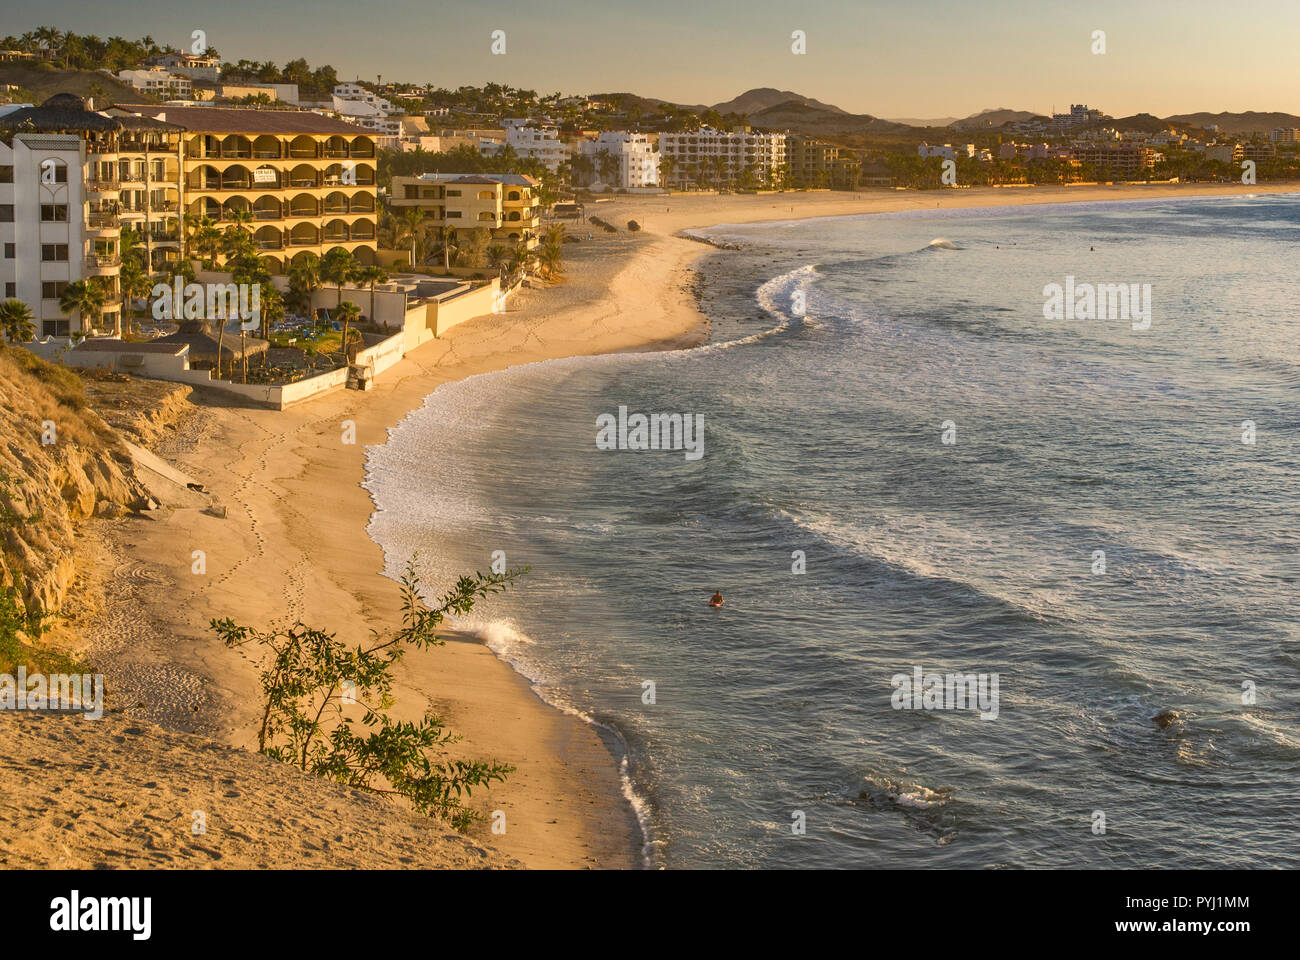 Brisas del Mar area at sunrise, San Jose del Cabo, Baja California Sur, Mexico Stock Photo